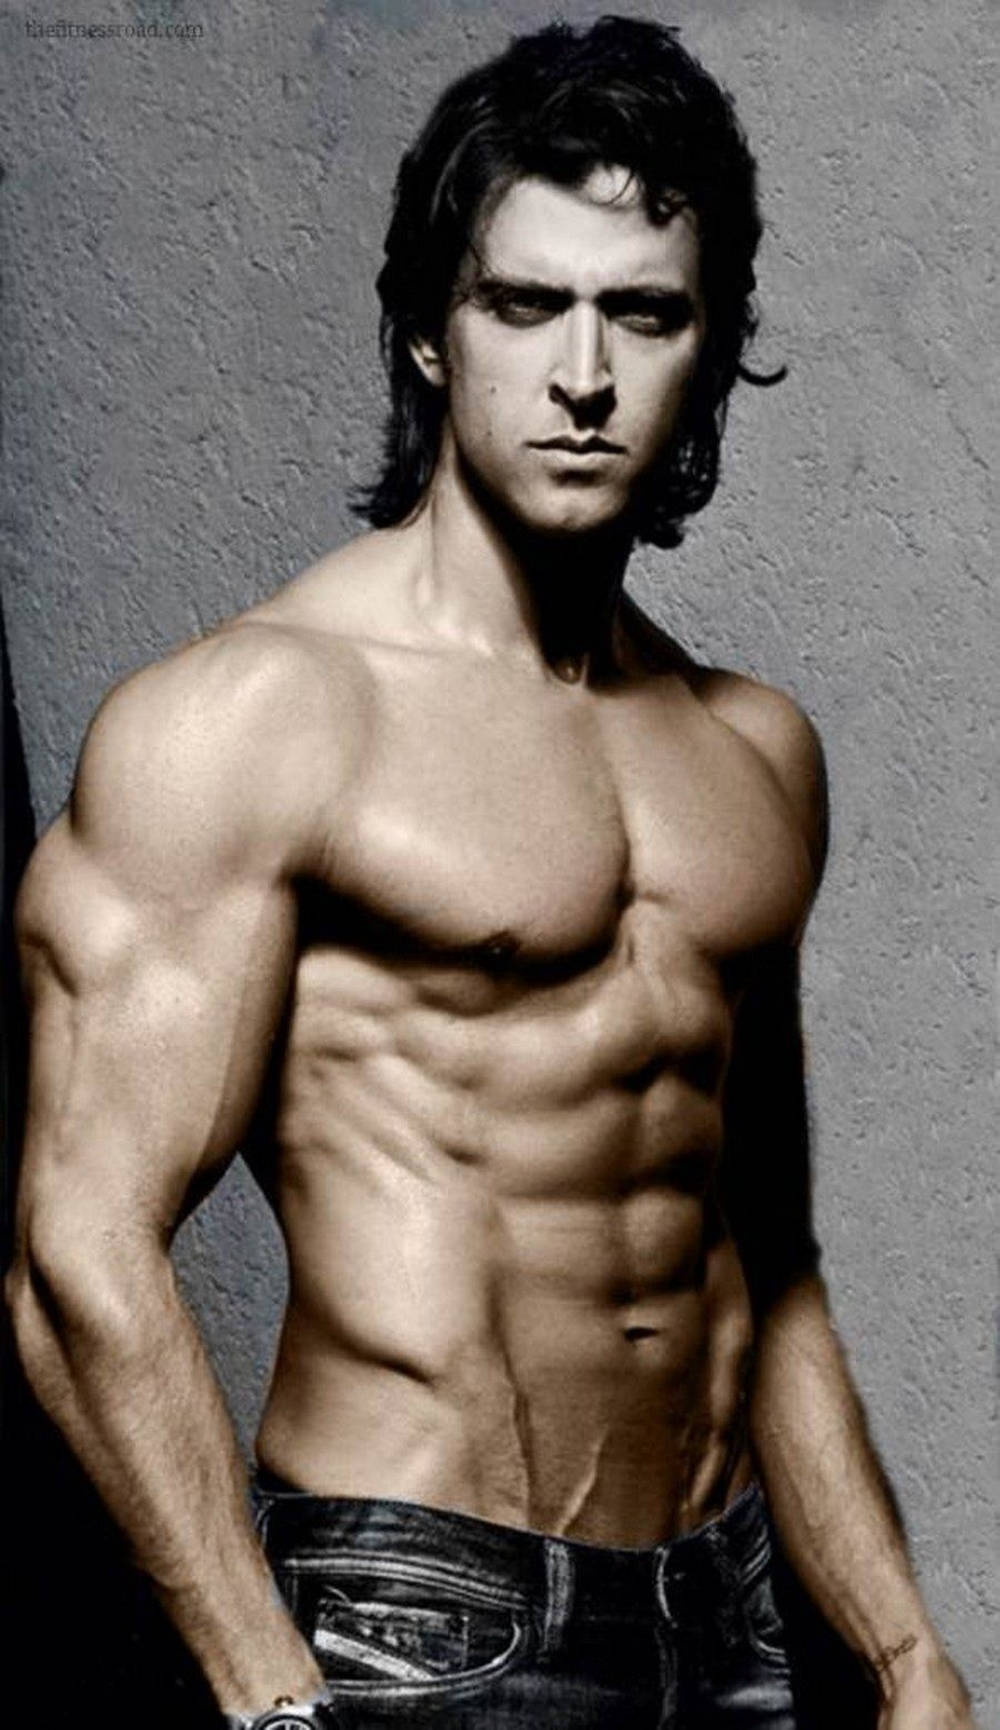 Взгляните на изумительную физическую форму Ритика Рошана, чтобы поверить в невероятные возможности своего тела